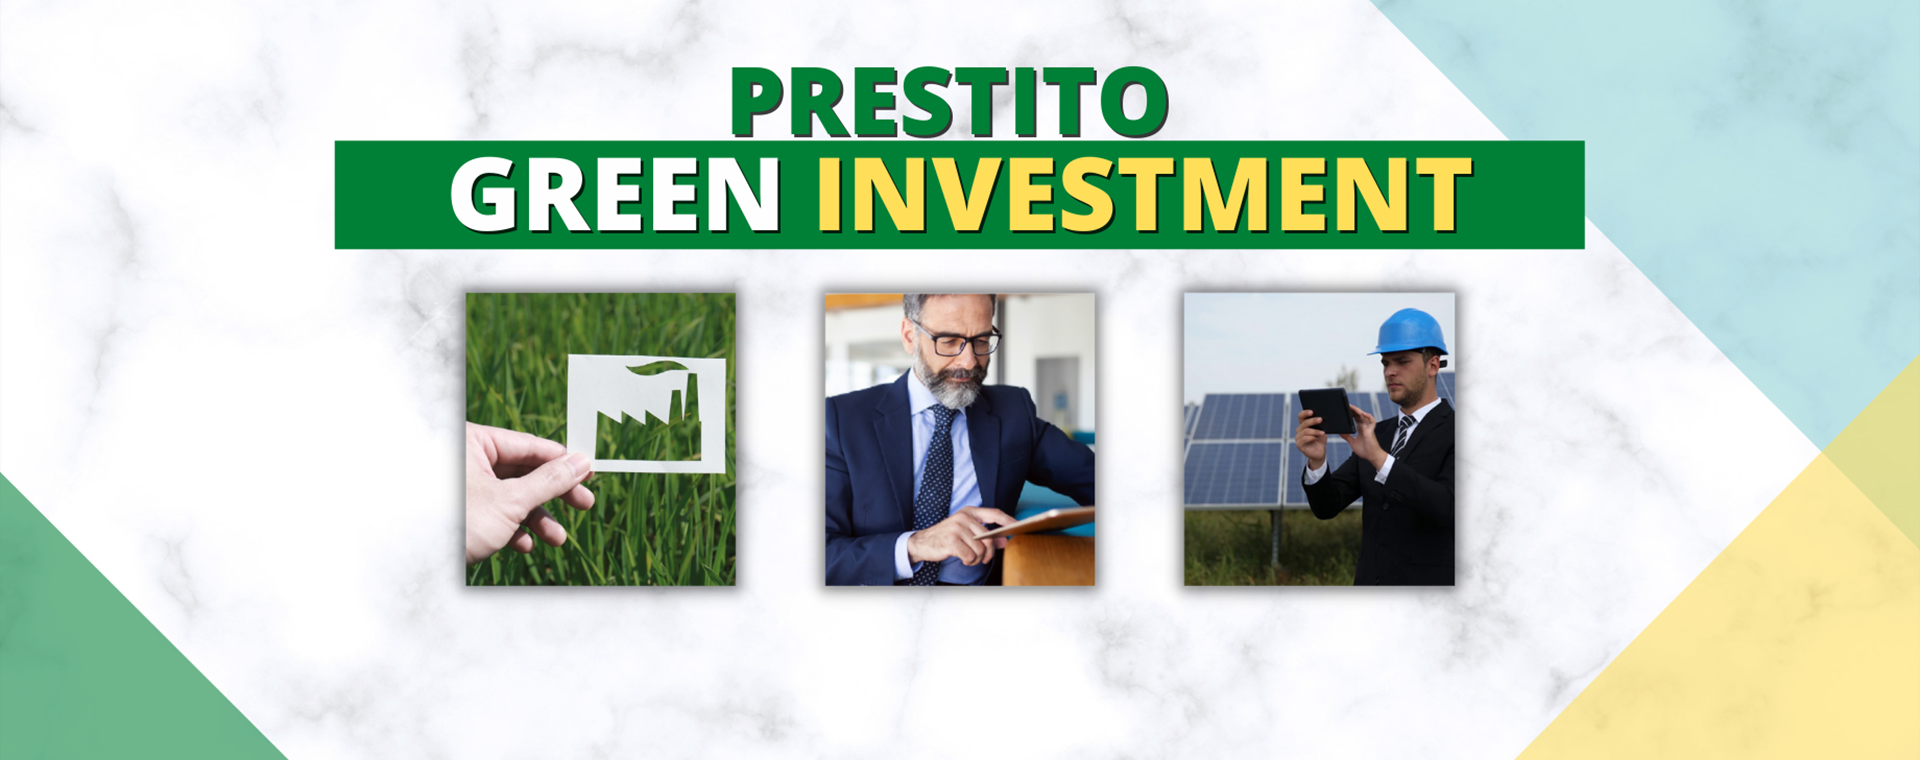 Prestito GREEN Investment 